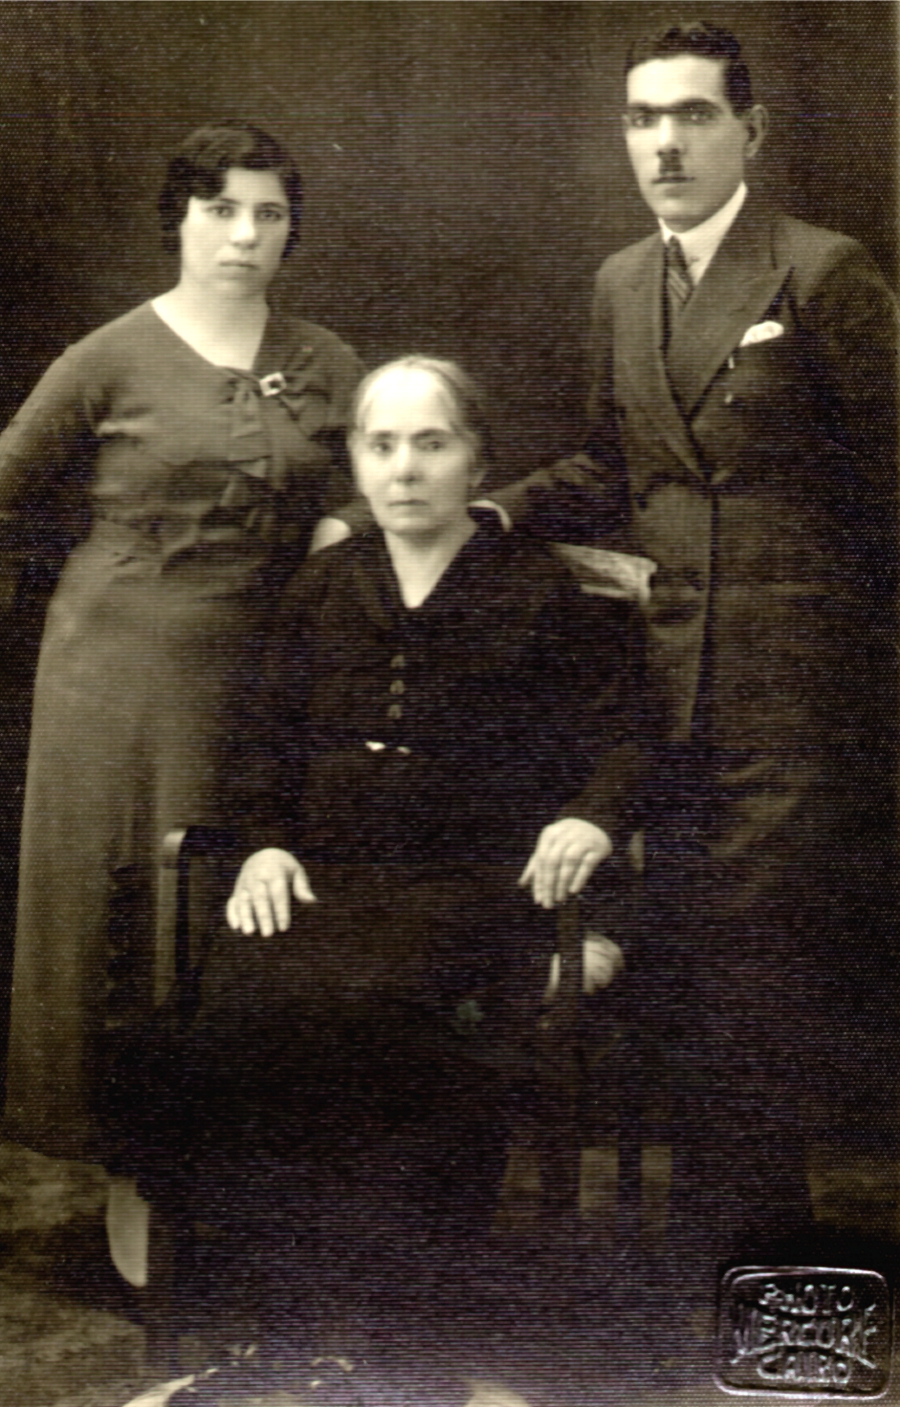 Տէր եւ Տիկին Կարապետ եւ Սաթենիկ Պալըգճեան եւ մայրը՝ Մարիամ Պալըգճեան, Կահիրէ, 1938 թ.։